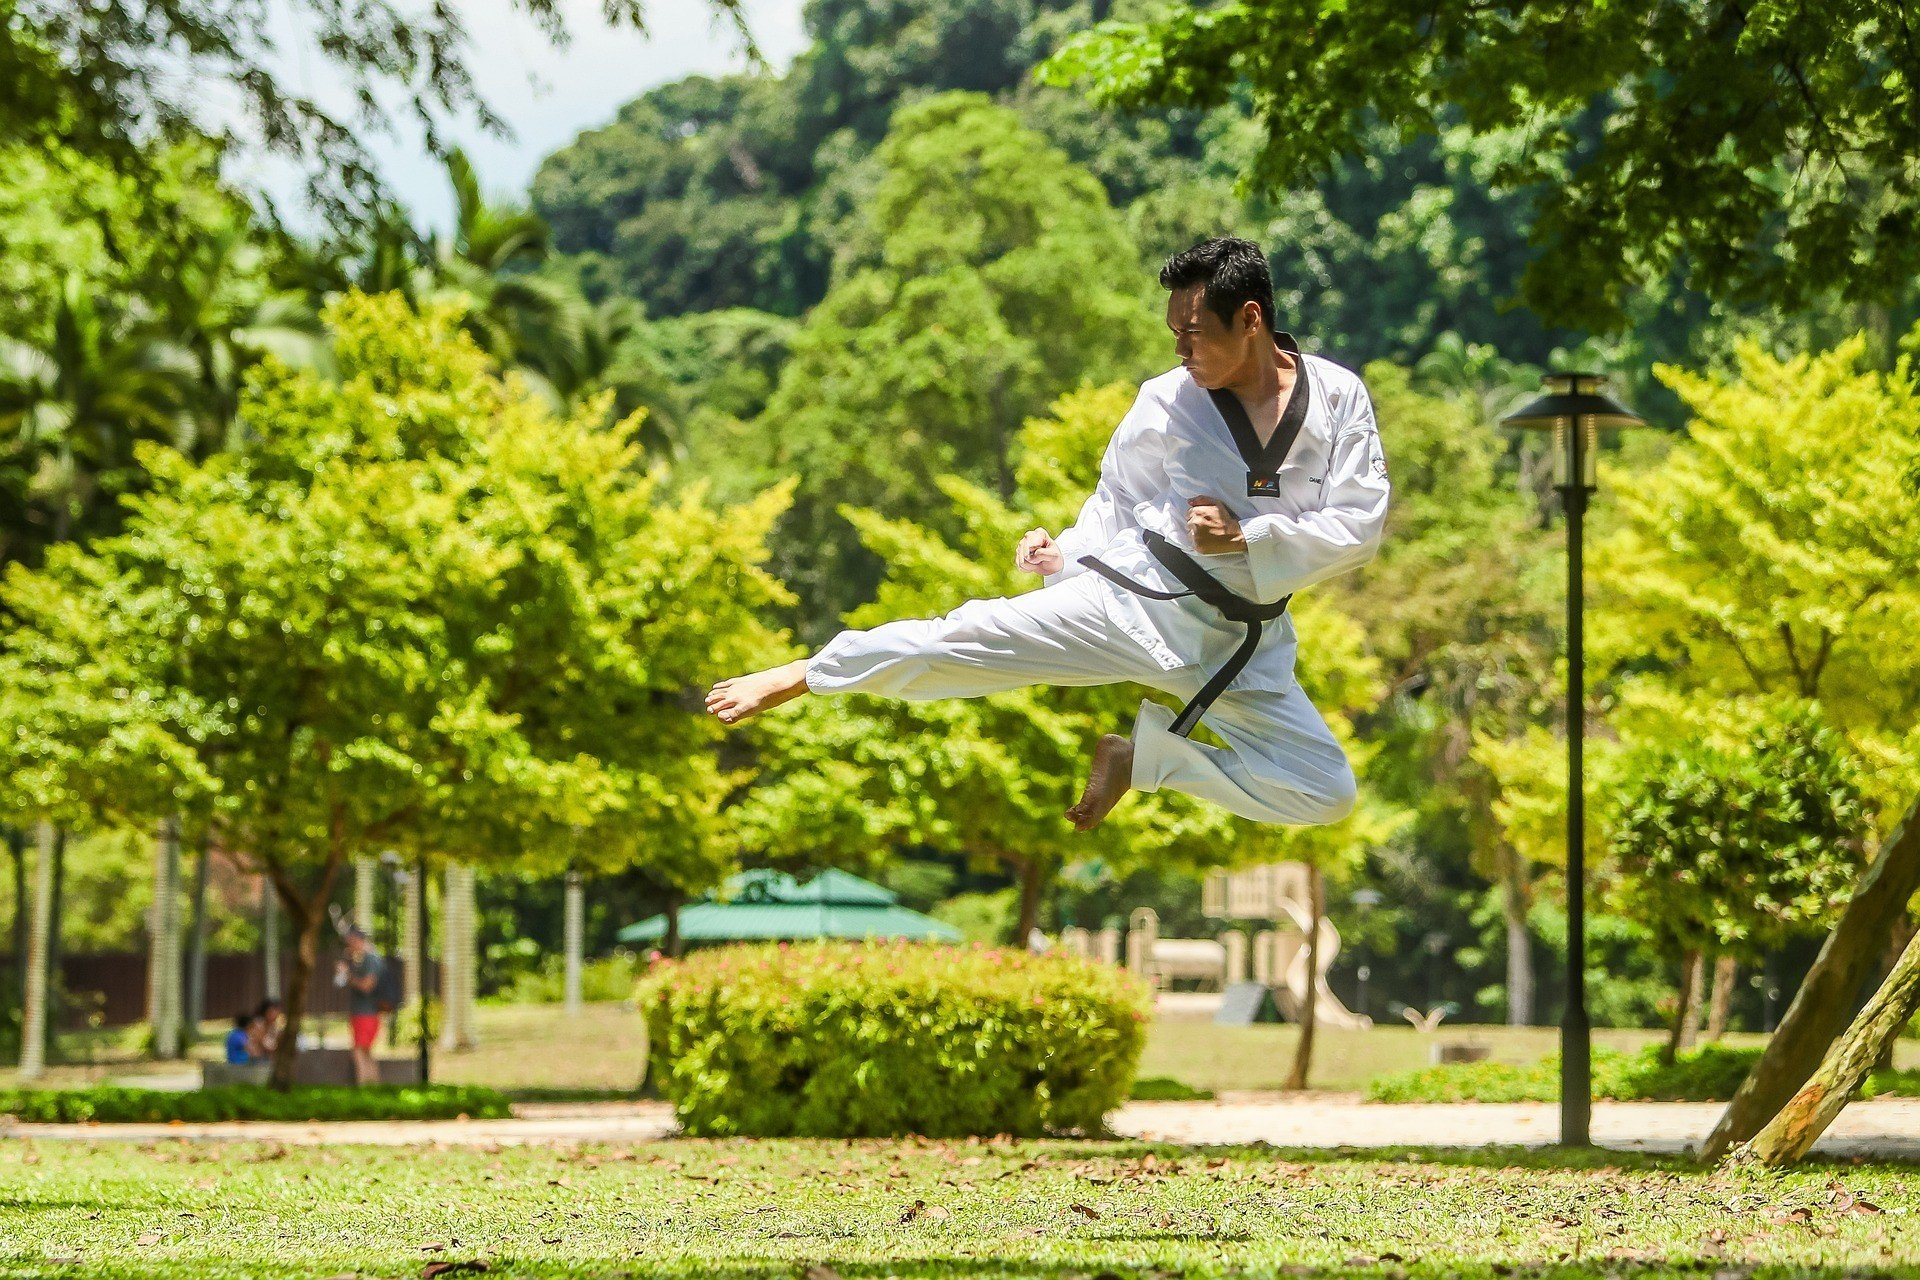 Homem de quimono branco, no ar, realizando um golpe de kung fu.